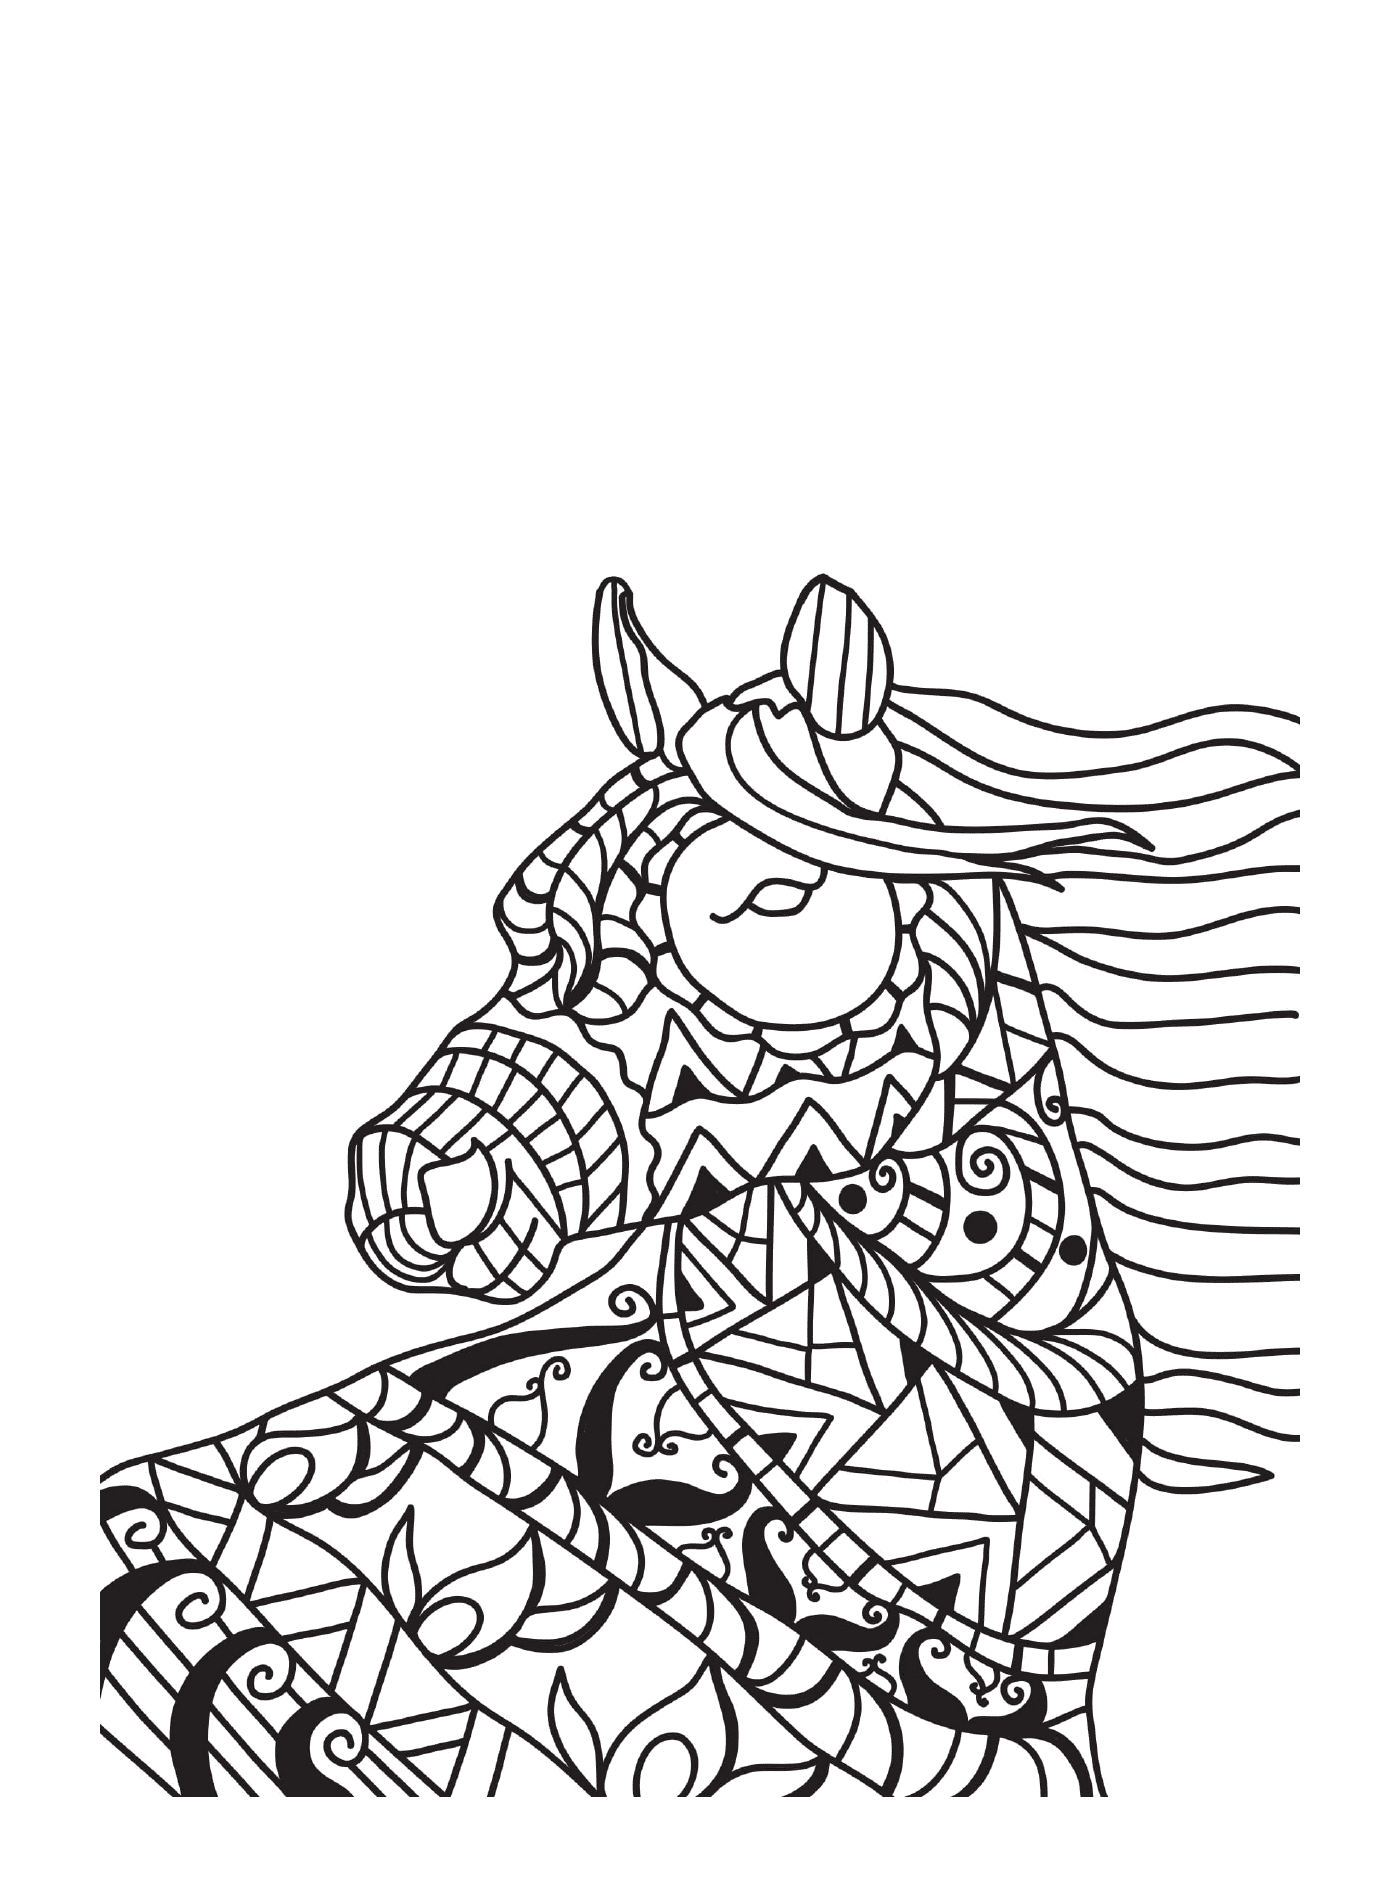  La testa di un cavallo 